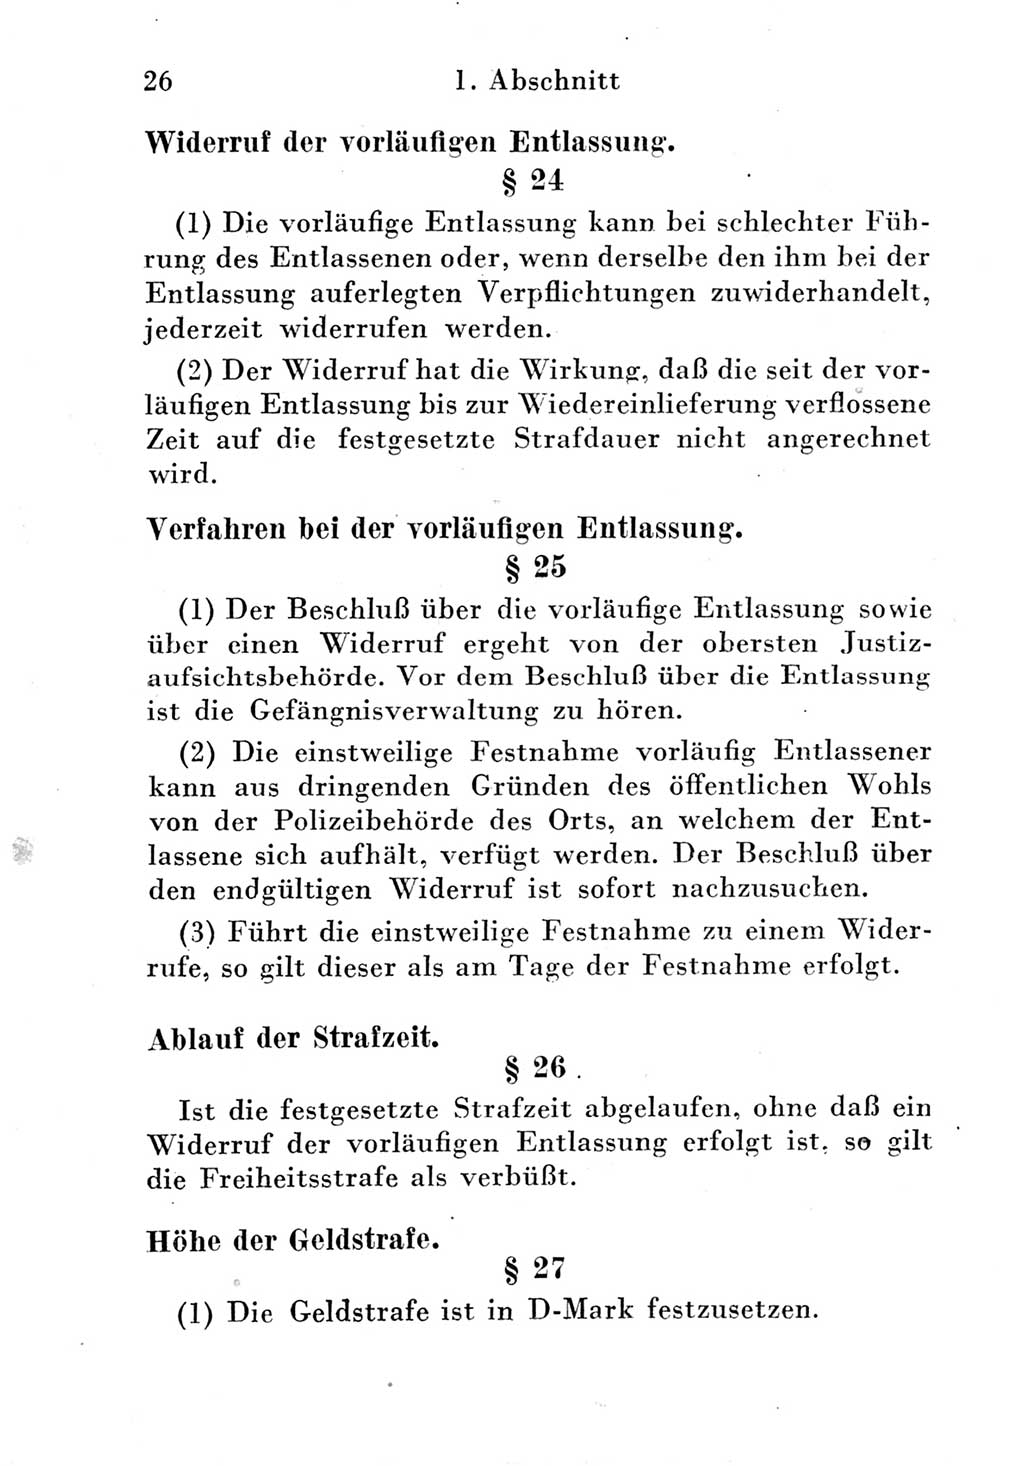 Strafgesetzbuch (StGB) und andere Strafgesetze [Deutsche Demokratische Republik (DDR)] 1951, Seite 26 (StGB Strafges. DDR 1951, S. 26)